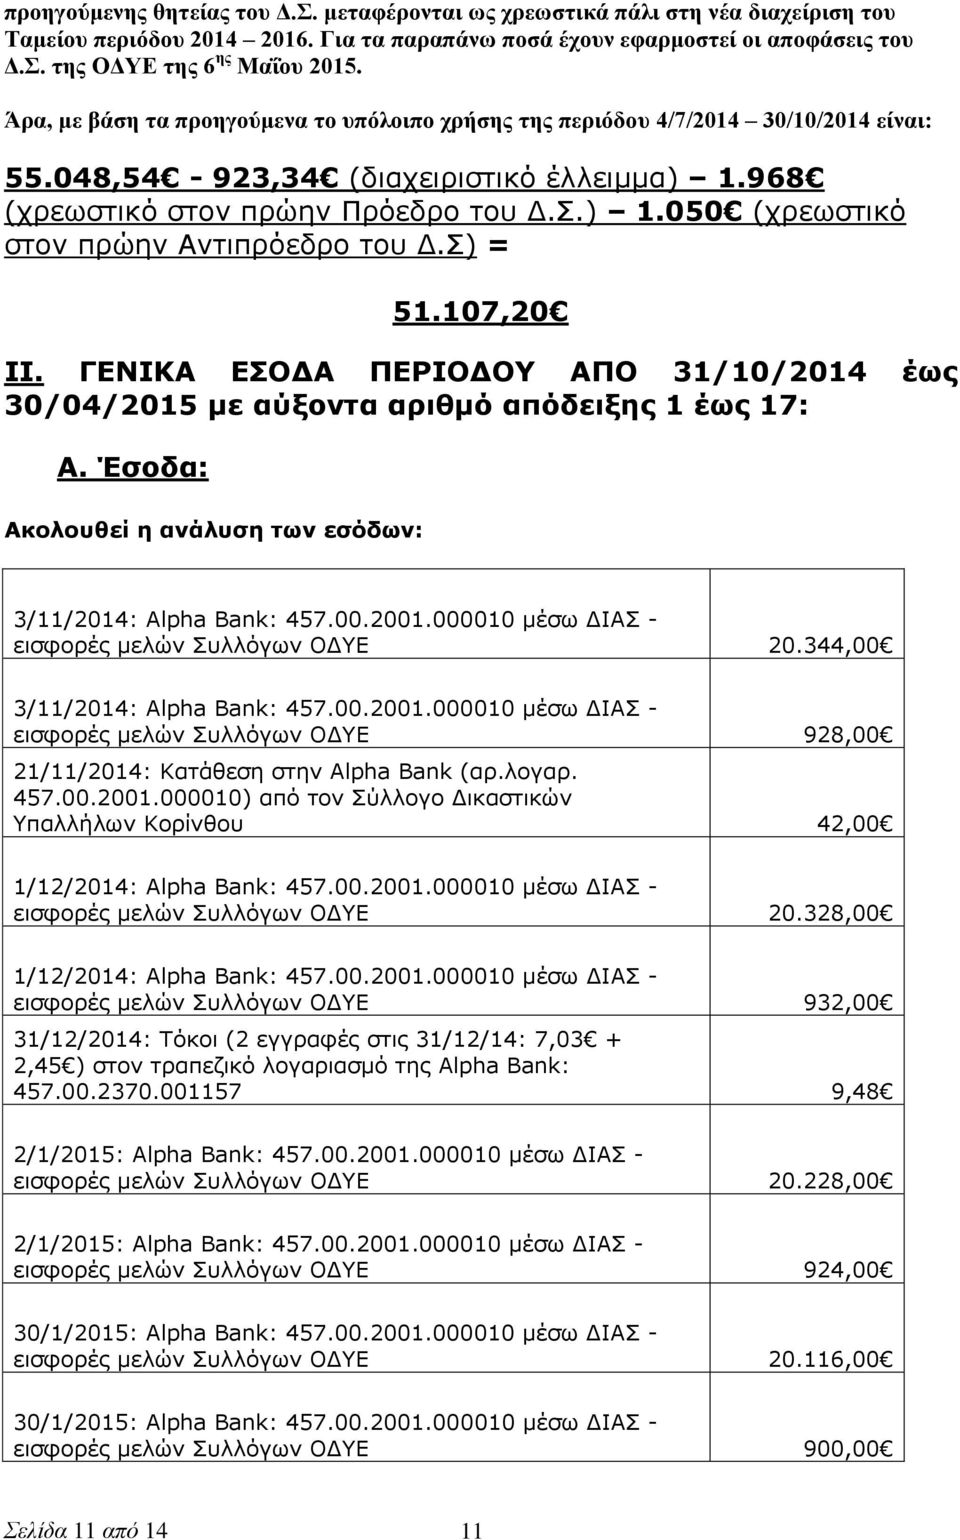 Σ) = 51.107,20 ΙΙ. ΓΕΝΙΚΑ ΕΣΟΔΑ ΠΕΡΙΟΔΟΥ ΑΠΟ 31/10/2014 έως 30/04/2015 με αύξοντα αριθμό απόδειξης 1 έως 17: Α. Έσοδα: Ακολουθεί η ανάλυση των εσόδων: 3/11/2014: Alpha Bank: 457.00.2001.